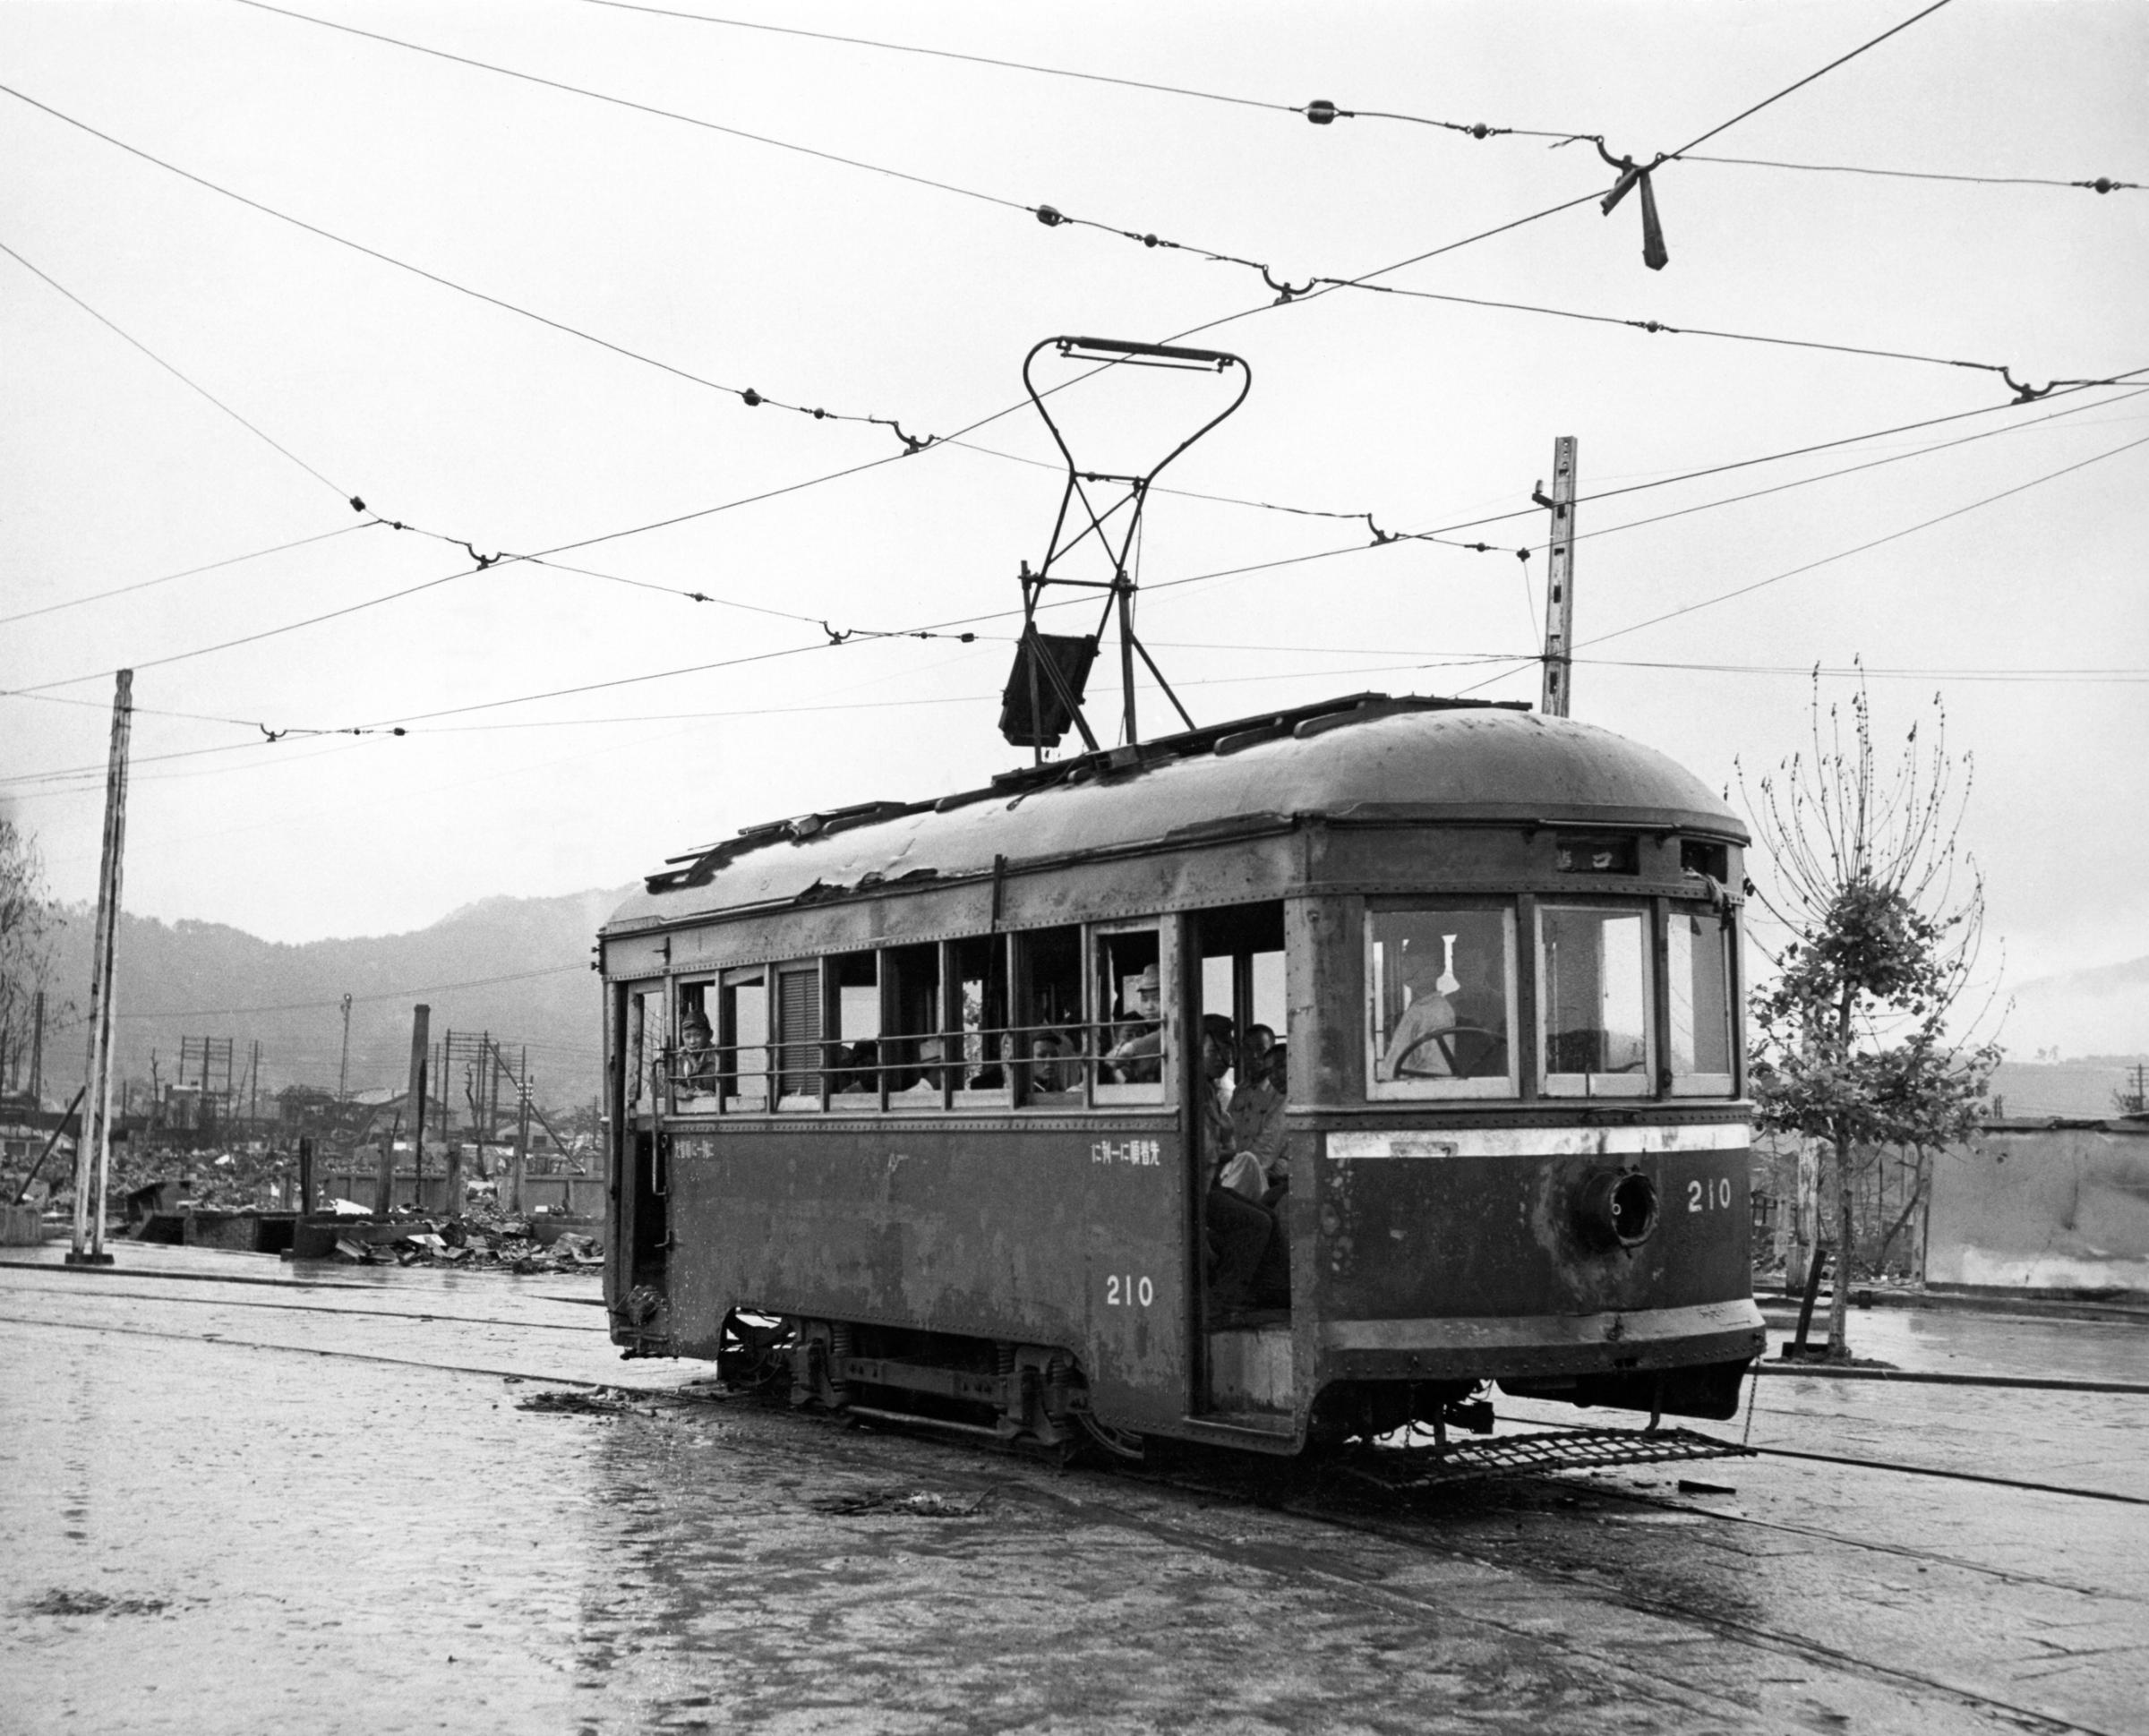 A passenger-filled streetcar, Hiroshima, Japan, September 1945.